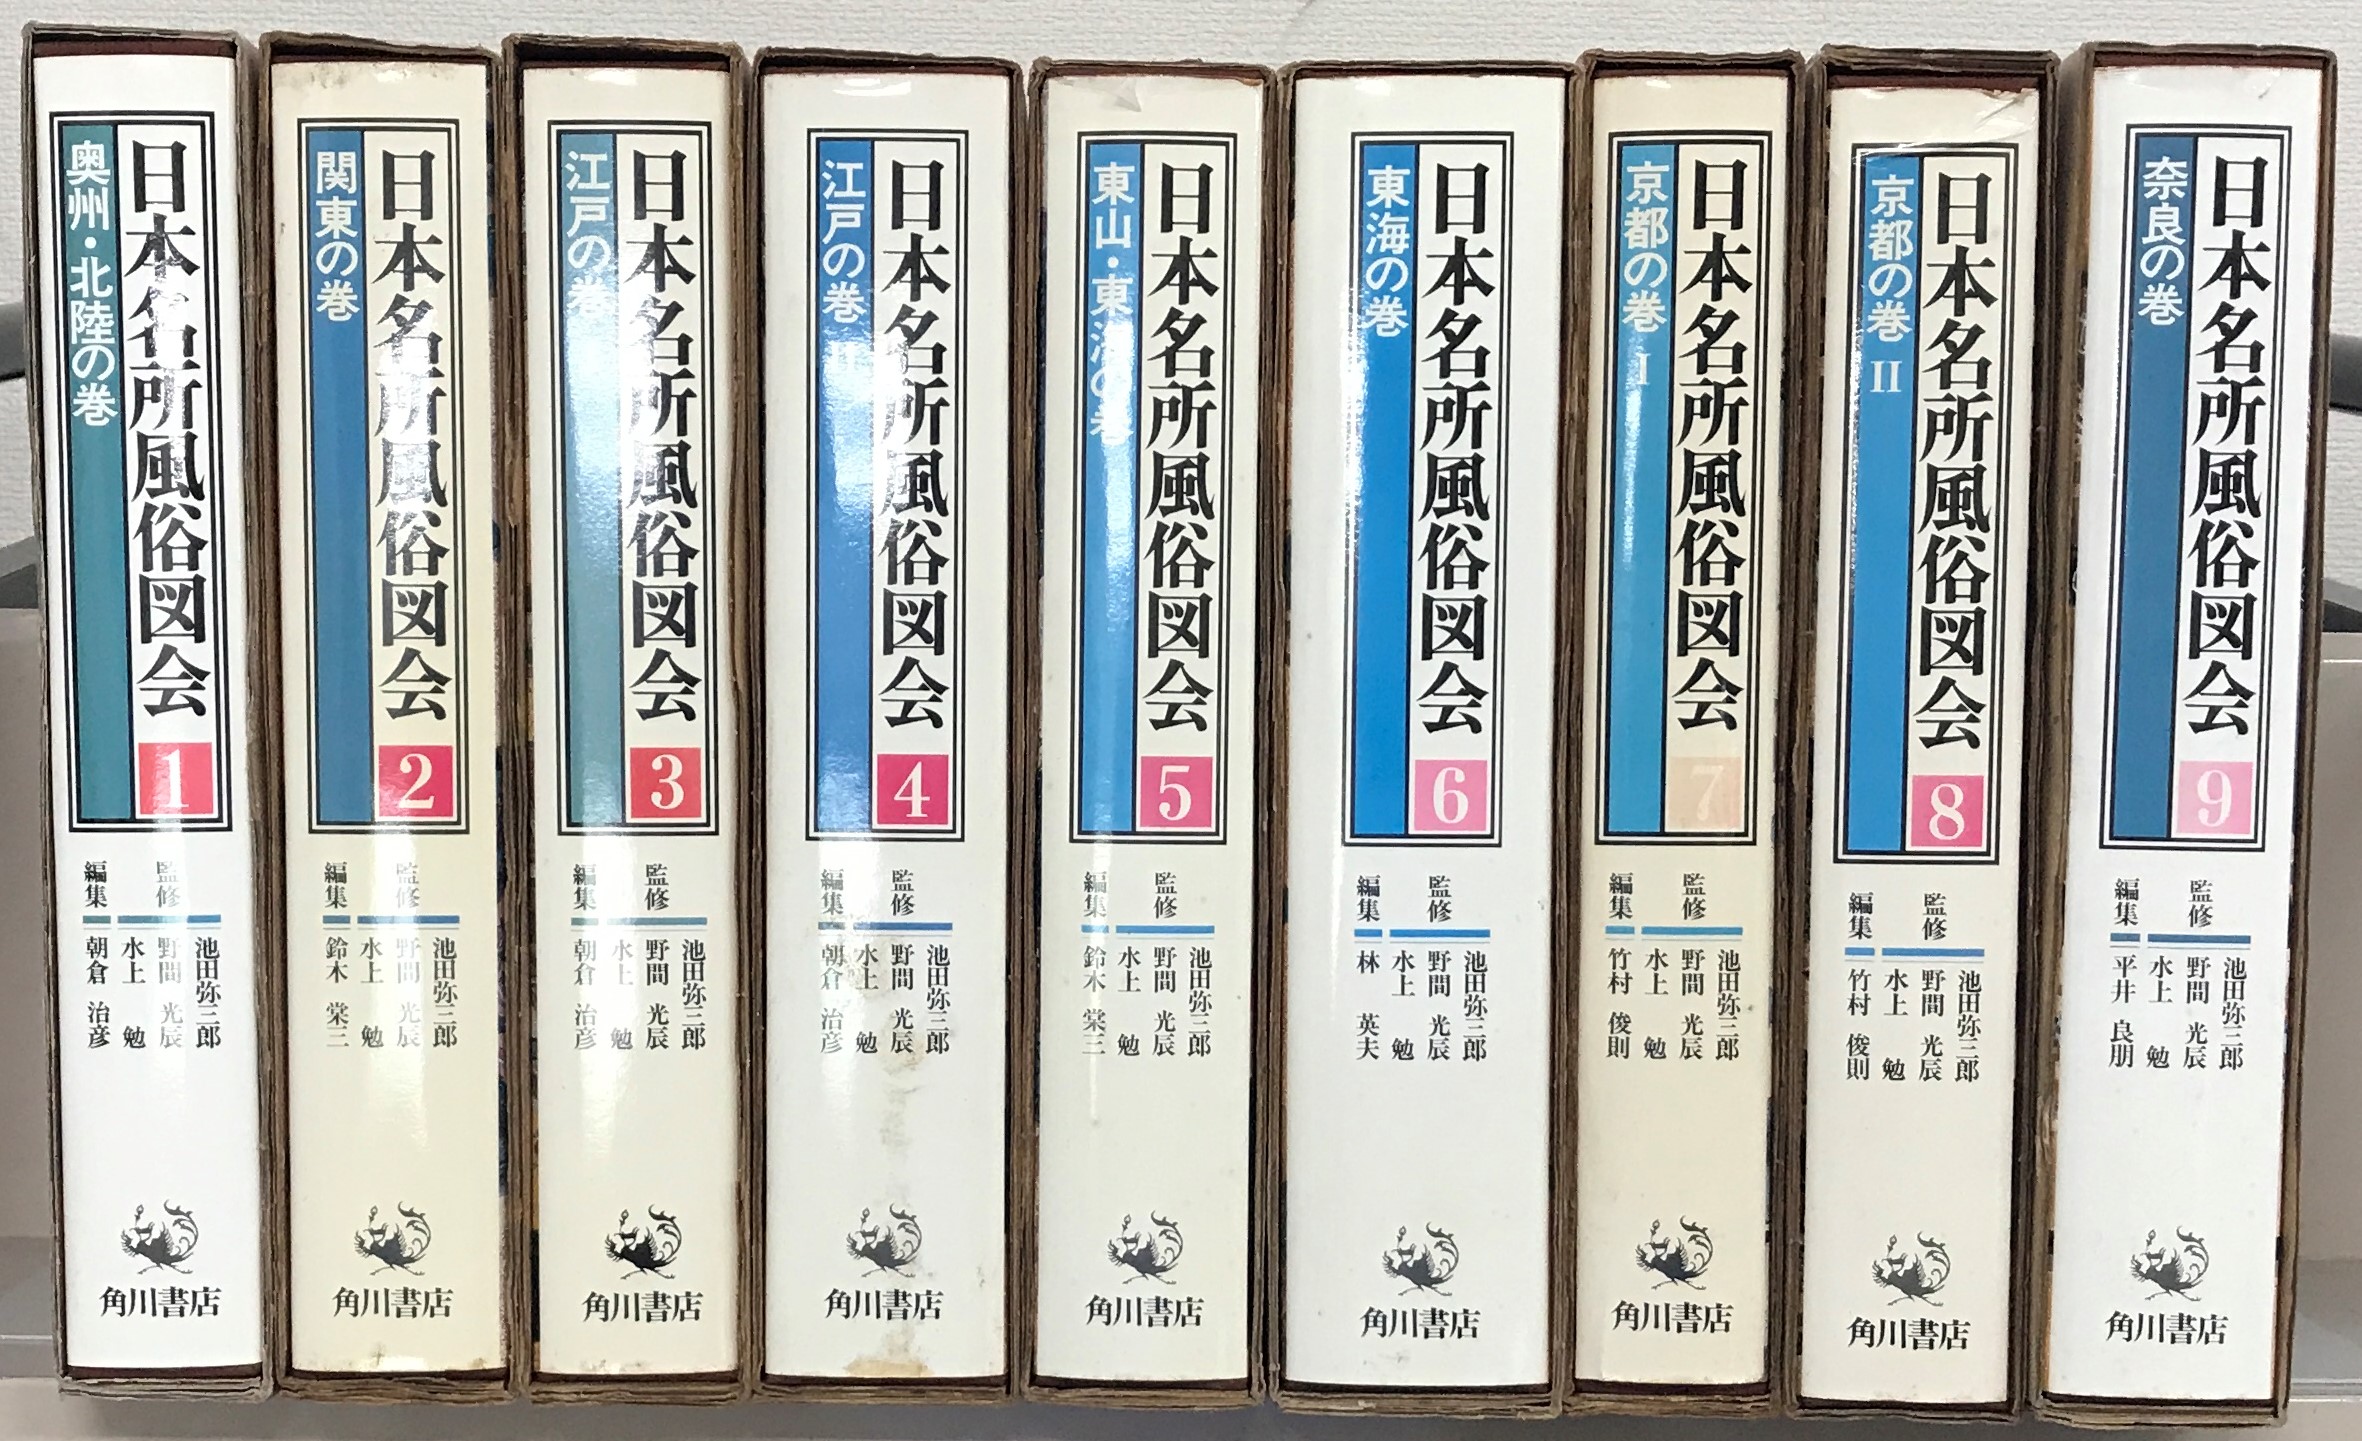 好評発売中 復刻本*活字化「日本名所風俗図会8」の「京都の巻2」竹村